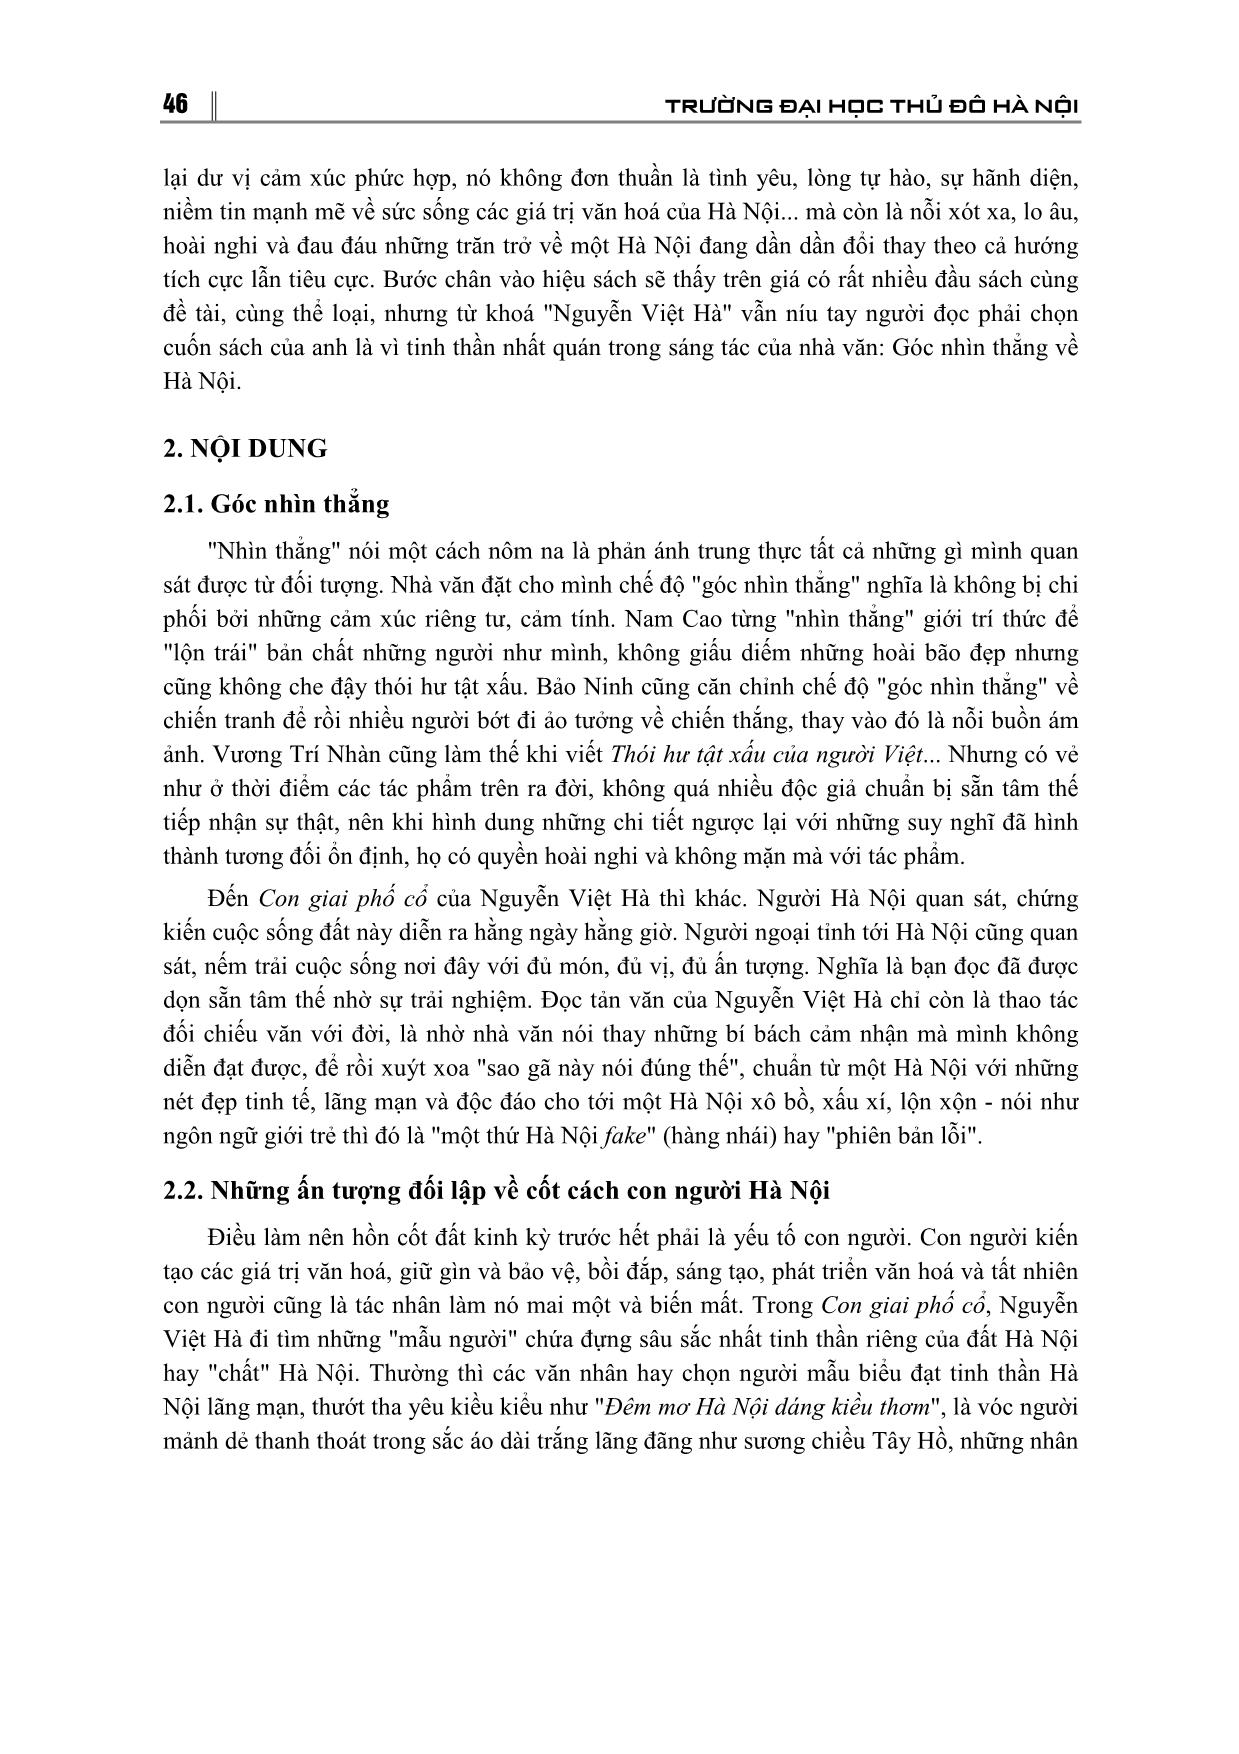 Con giai phố cổ của Nguyễn Việt Hà - Một góc nhìn thẳng về Hà Nội trang 2